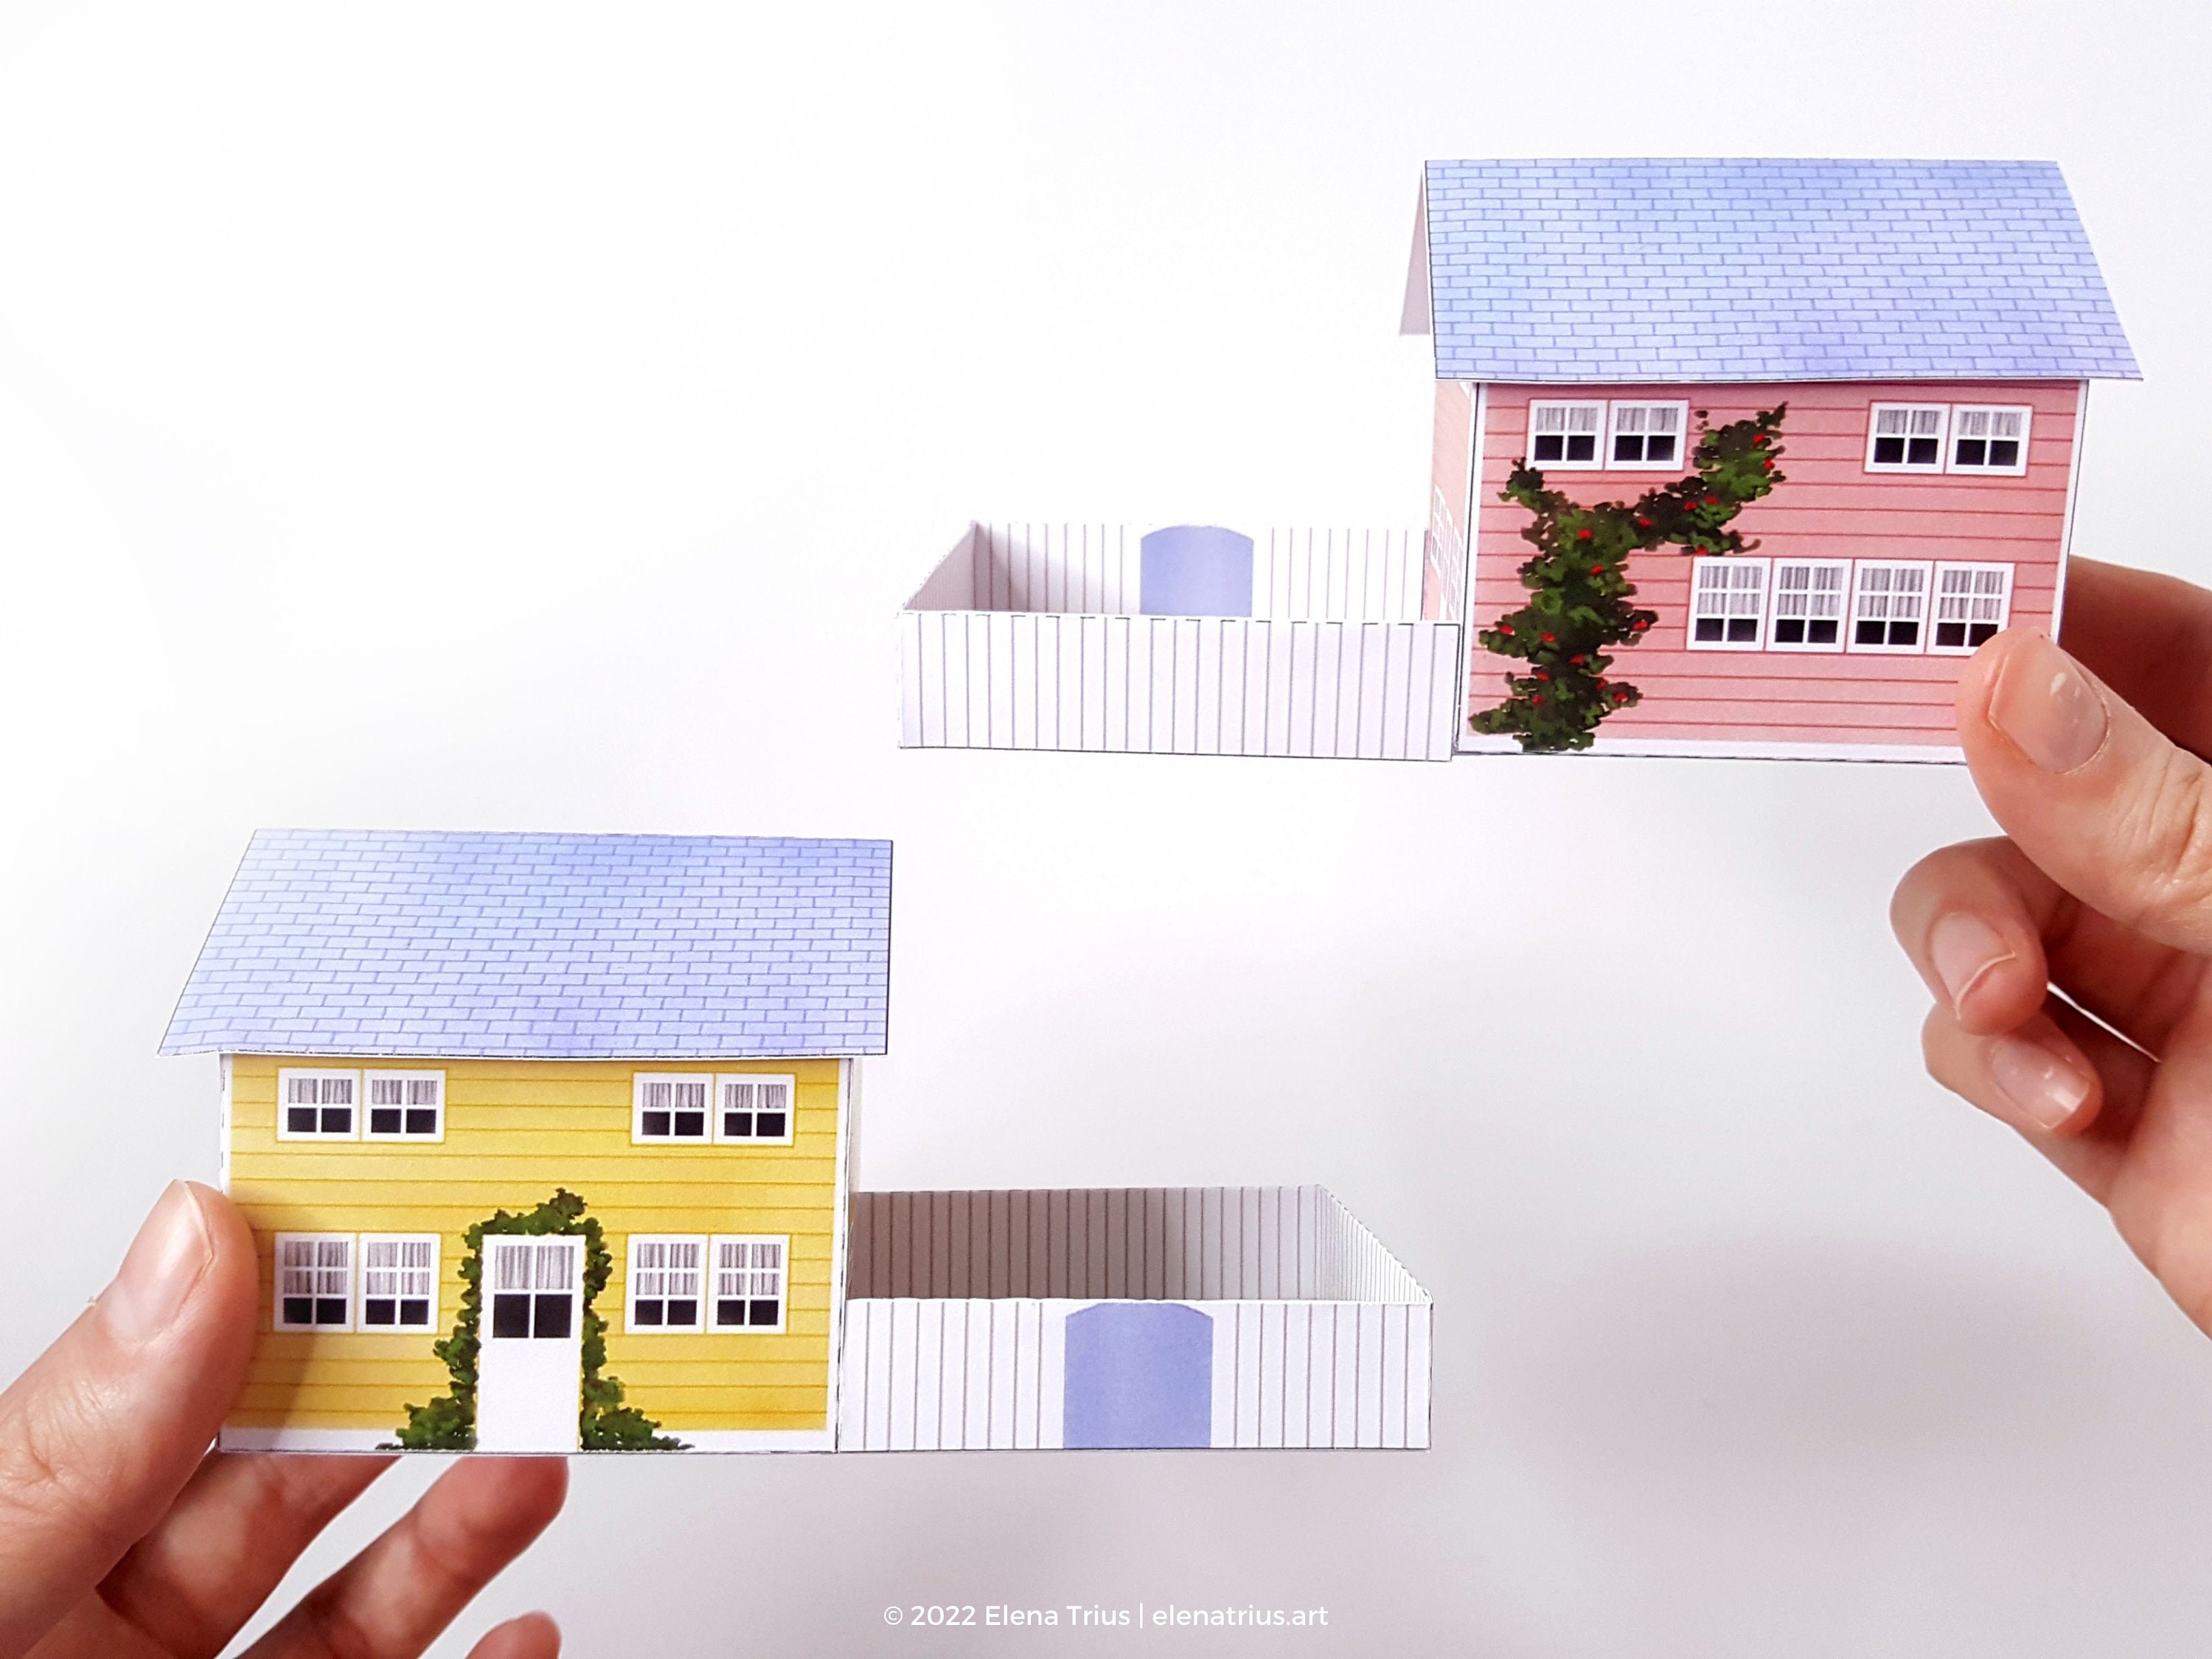 Maquetas de papel pueblo nórdico: un conjunto de dos casas en miniatura  para imprimir descarga PDF. -  México